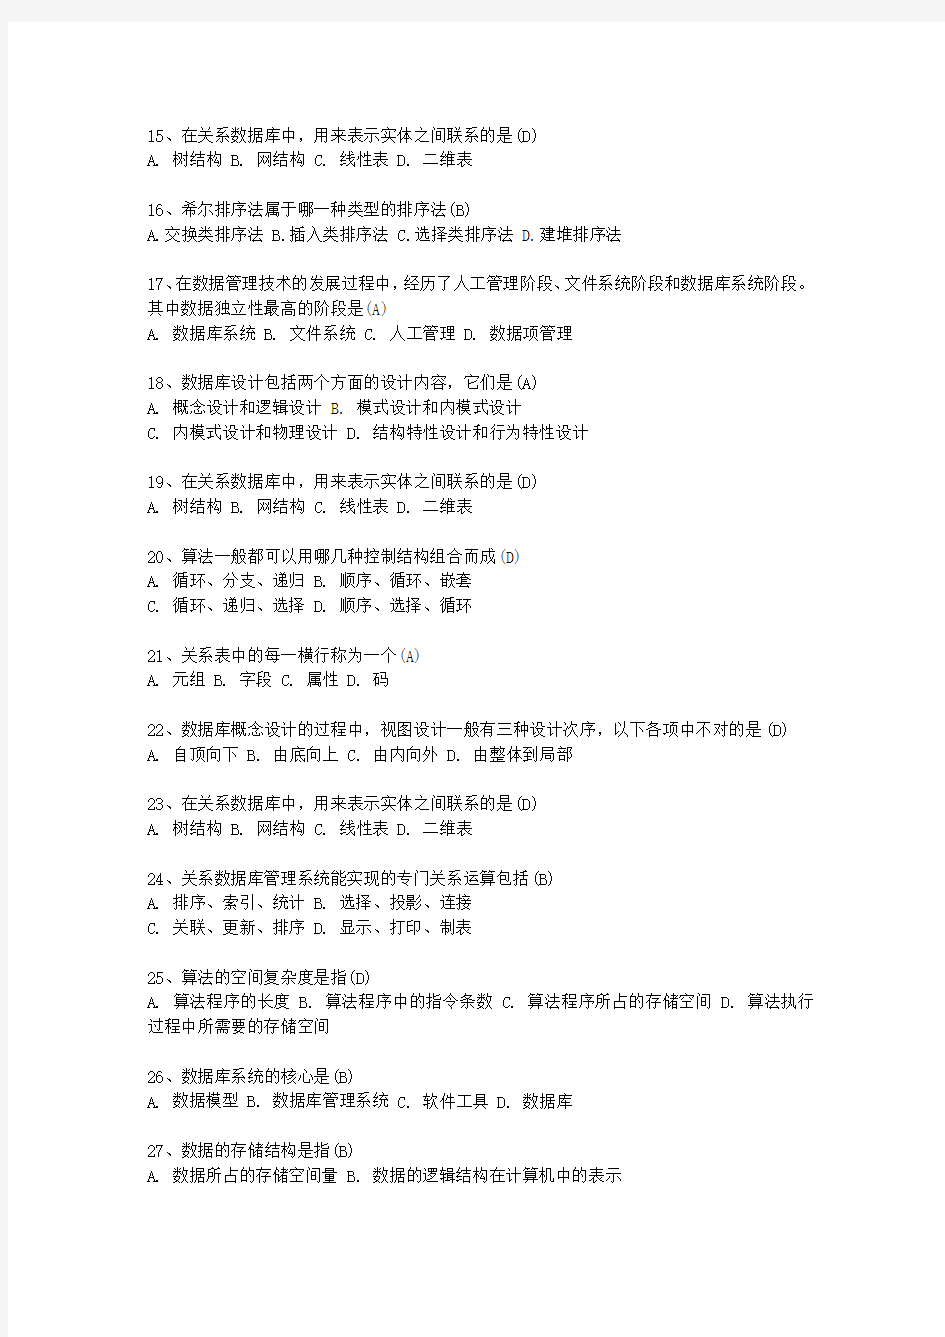 2010陕西省计算机等级考试试题 二级ACCESS最新考试试题库(完整版)